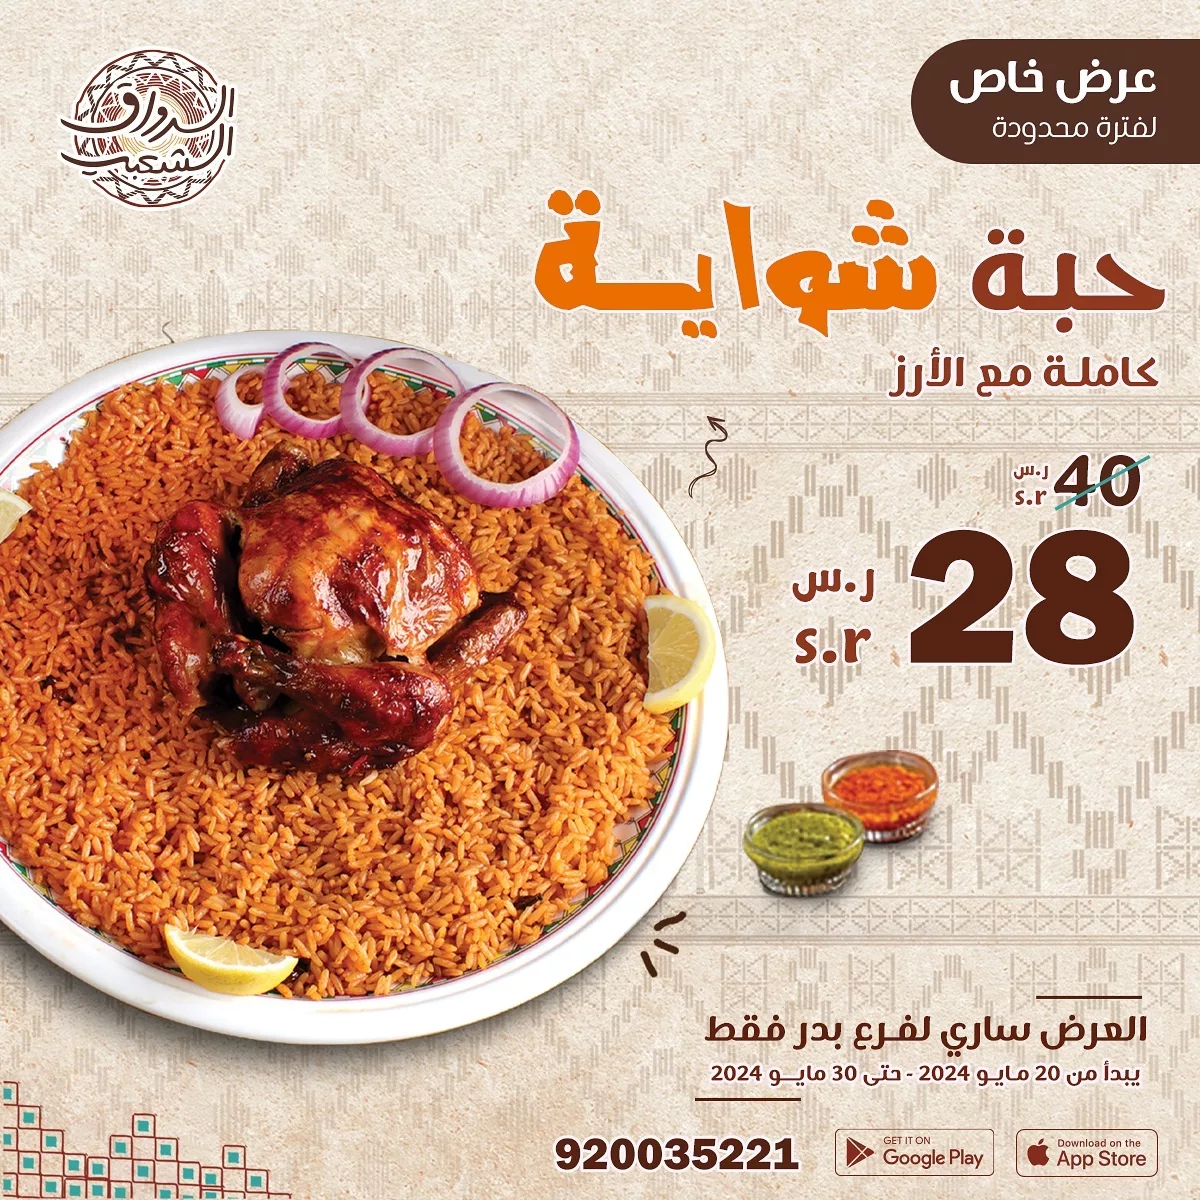 444746191 743801817830252 1307868060361252343 n jpg - عروض مطاعم السعودية اليوم صفحة واحدة | اشهي الأكلات بأرخص الاسعار